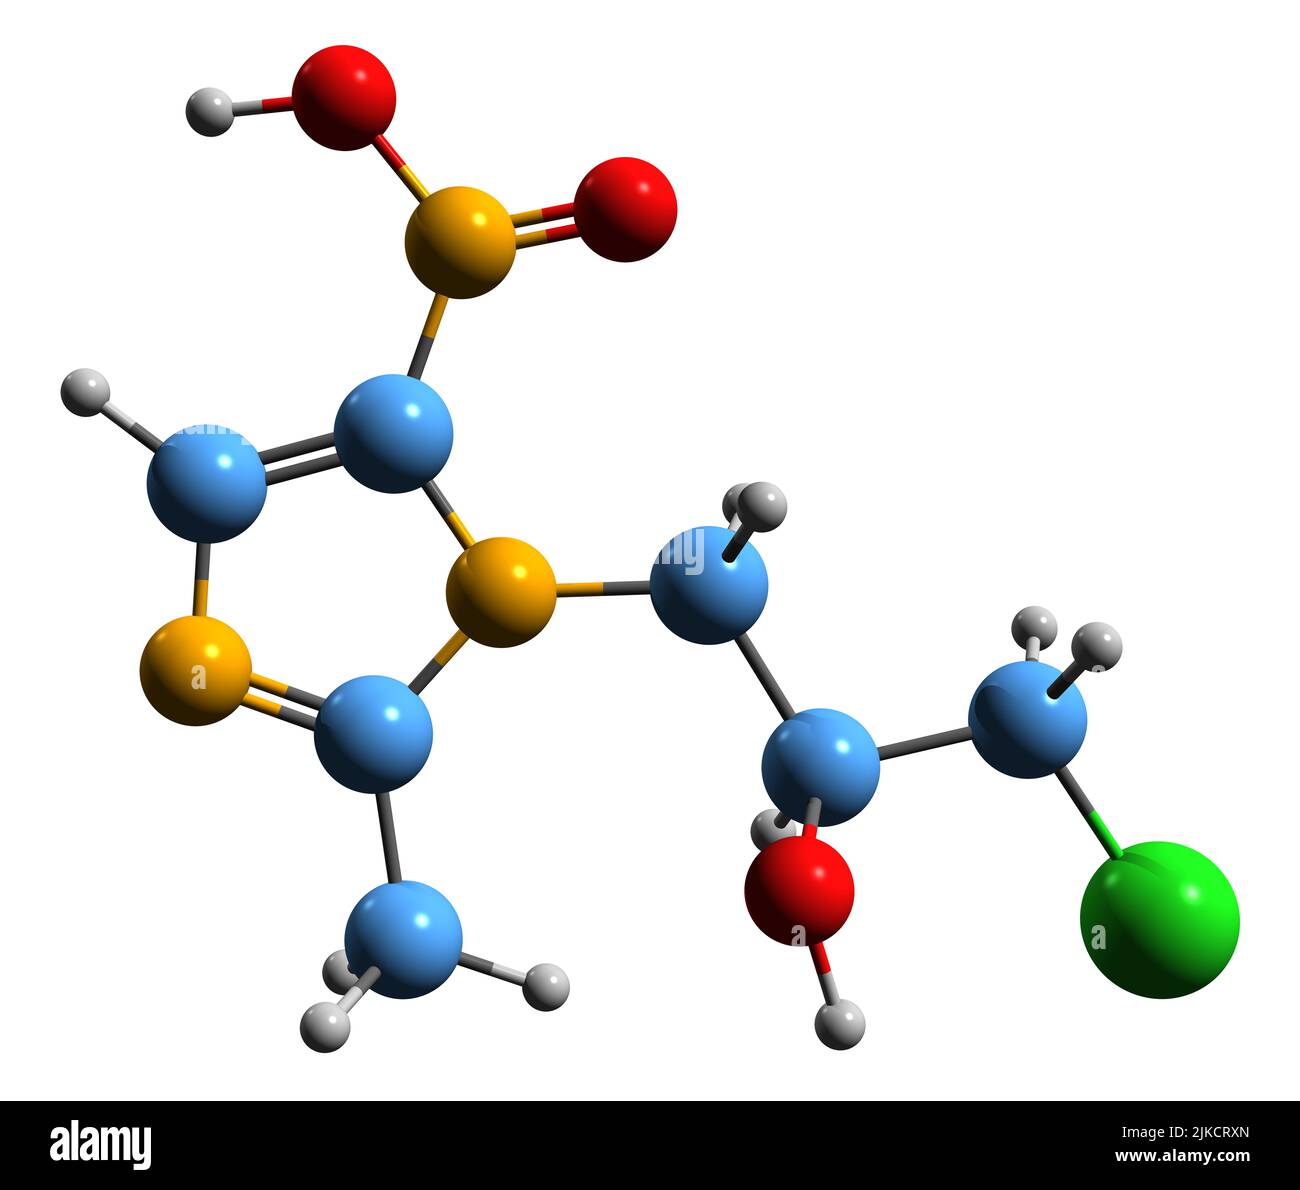 3D Bild der Skelettformel von Ornidazol - molekularchemische Struktur eines auf weißem Hintergrund isolierten Antiprotozoen-Antibiotikums Stockfoto